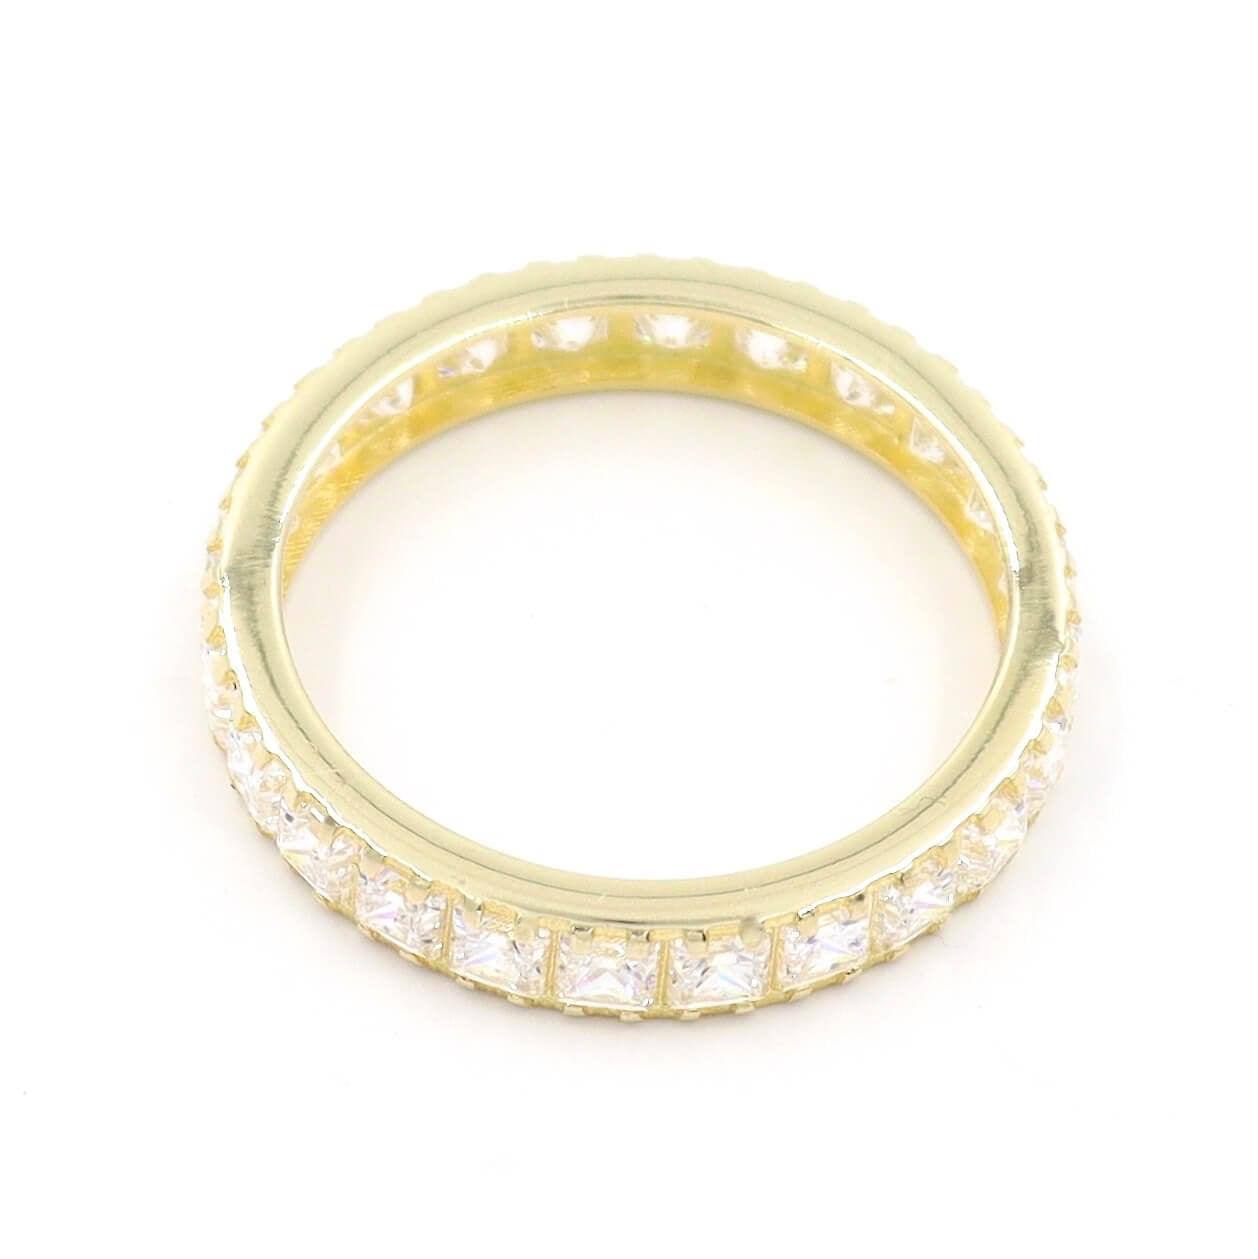 Ολόβερο δαχτυλίδι με καρέ ζιργκόν σε λευκό χρώμα